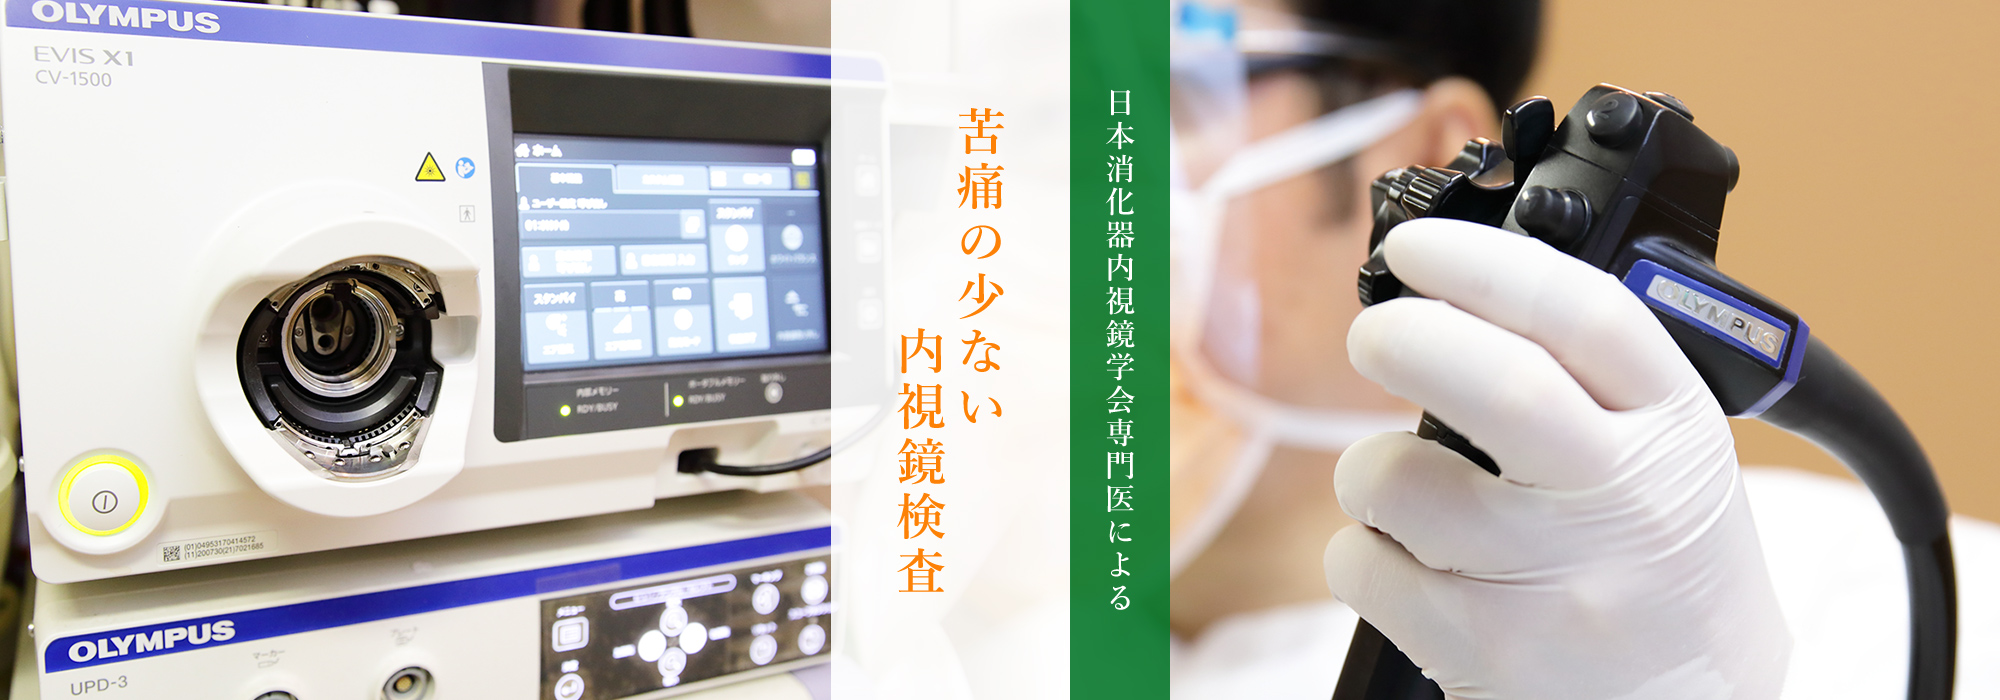 日本消化器内視鏡学会専門医による苦痛の少ない内視鏡検査